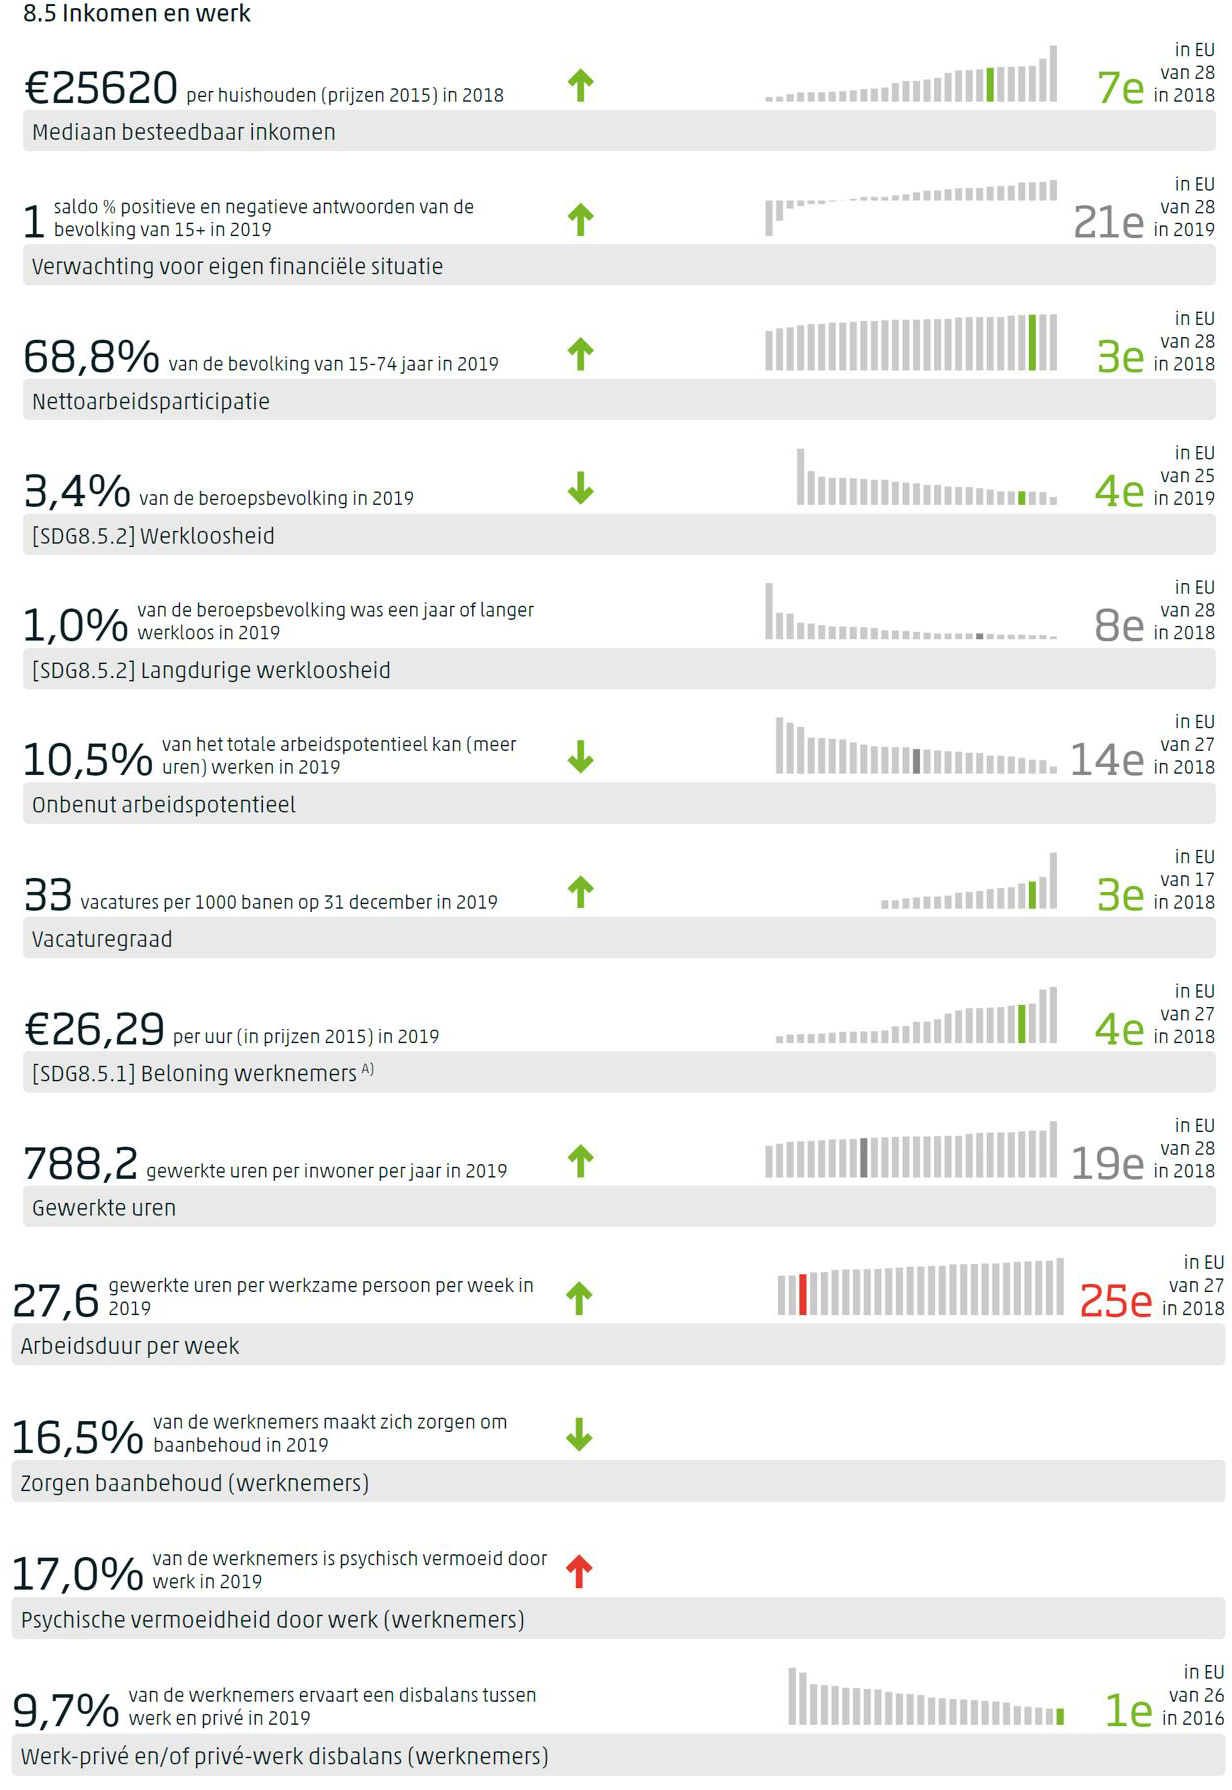 Dashboard voor SDG 8 met per indicator de meest recente waarde, de trend op middellange termijn indien gemeten, en de positie van Nederland in de EU indien waargenomen.